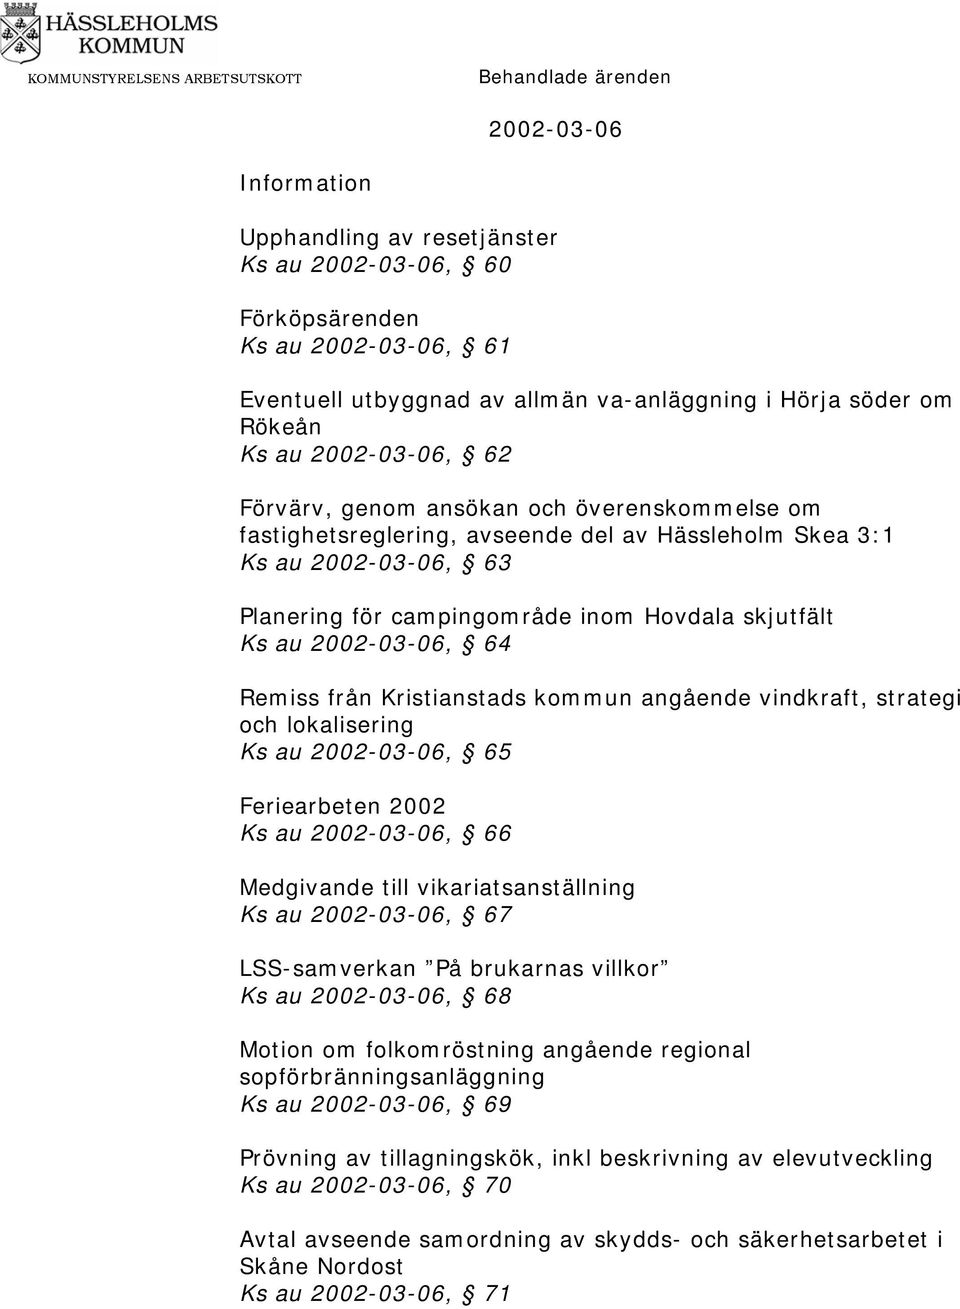 Remiss från Kristianstads kommun angående vindkraft, strategi och lokalisering Ks au 2002-03-06, 65 Feriearbeten 2002 Ks au 2002-03-06, 66 Medgivande till vikariatsanställning Ks au 2002-03-06, 67